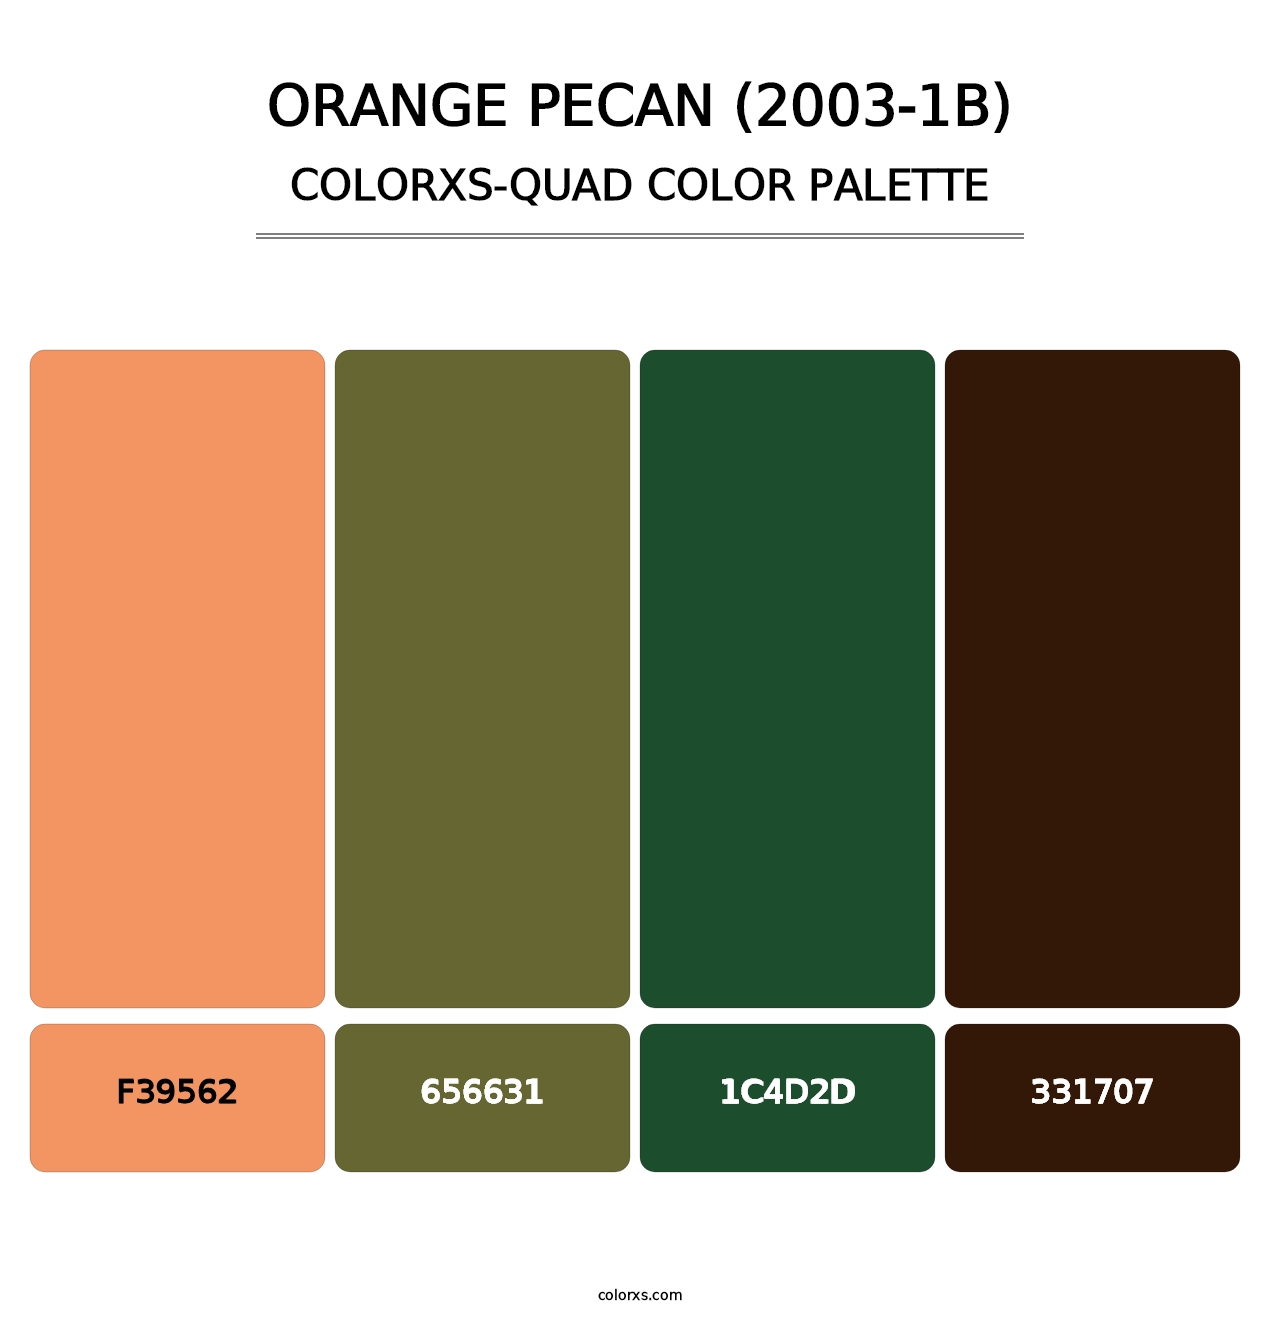 Orange Pecan (2003-1B) - Colorxs Quad Palette